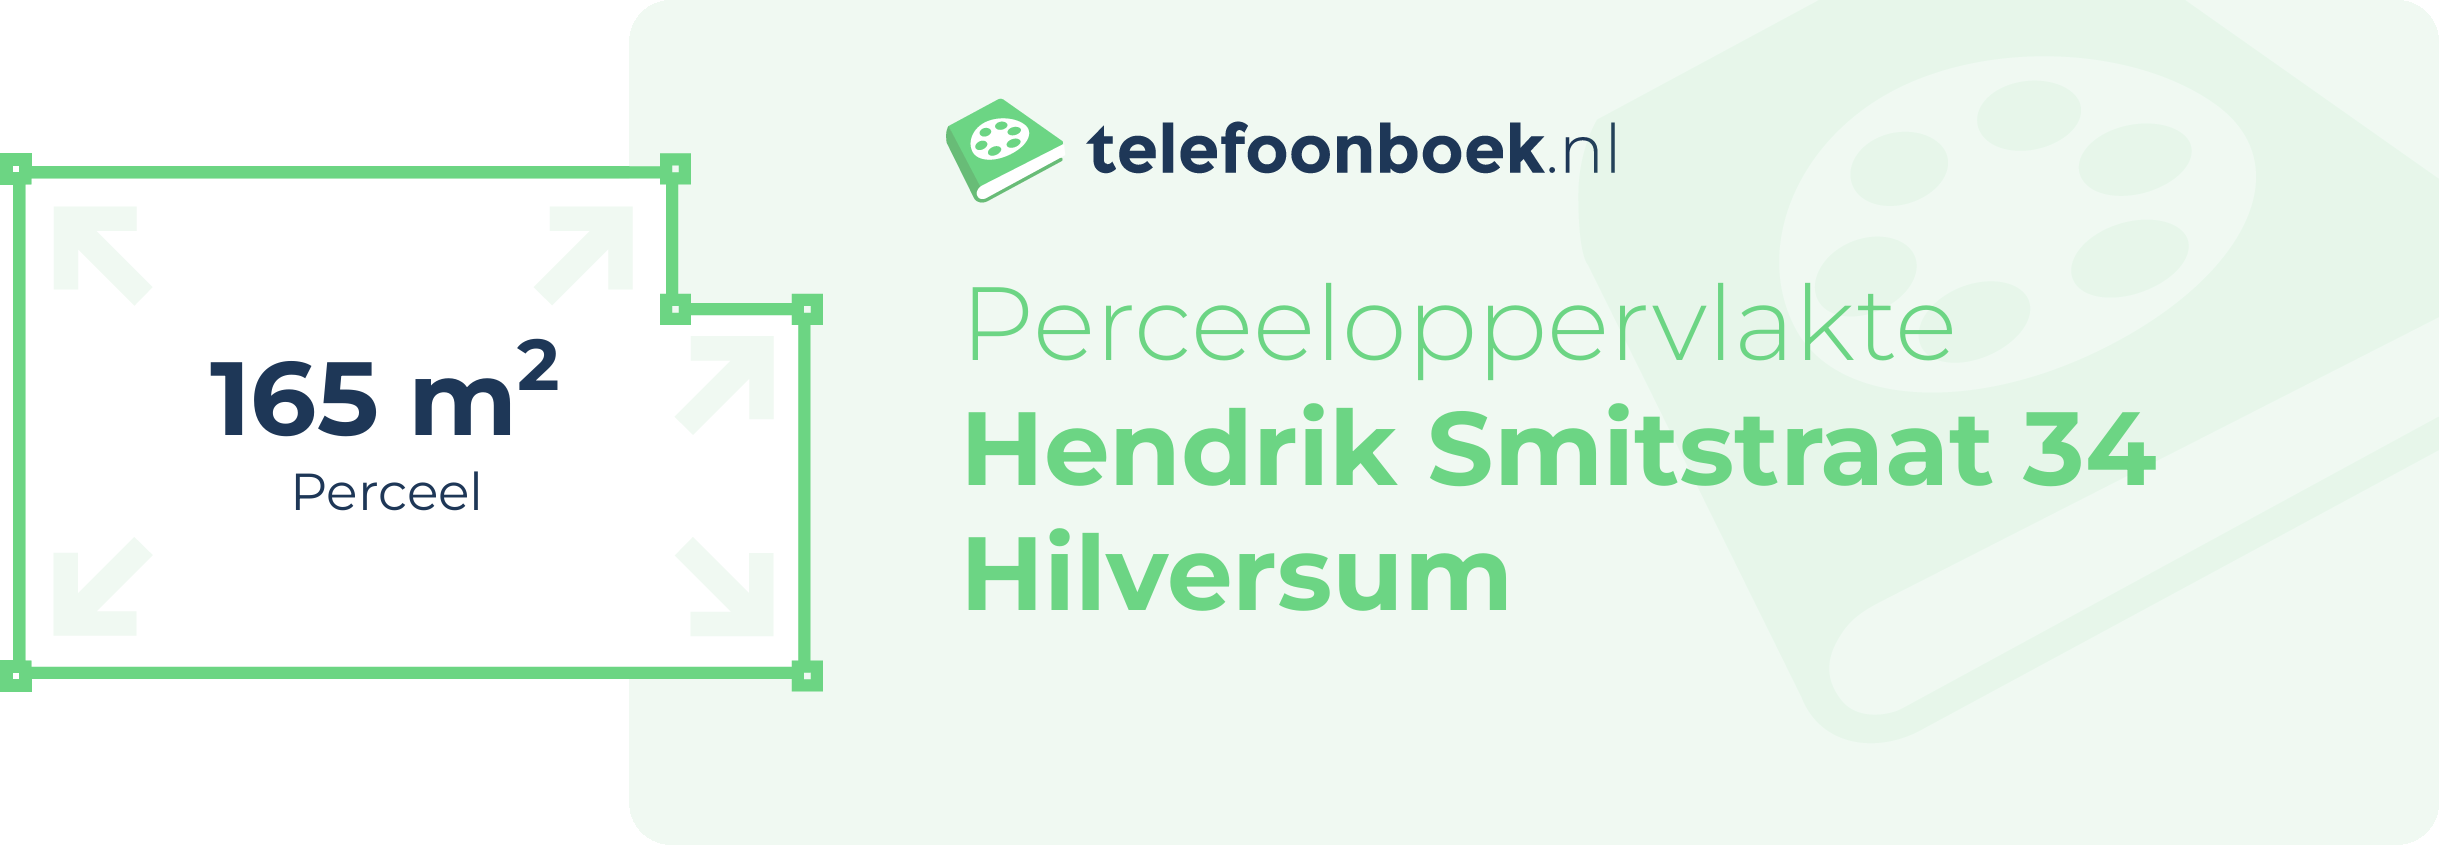 Perceeloppervlakte Hendrik Smitstraat 34 Hilversum